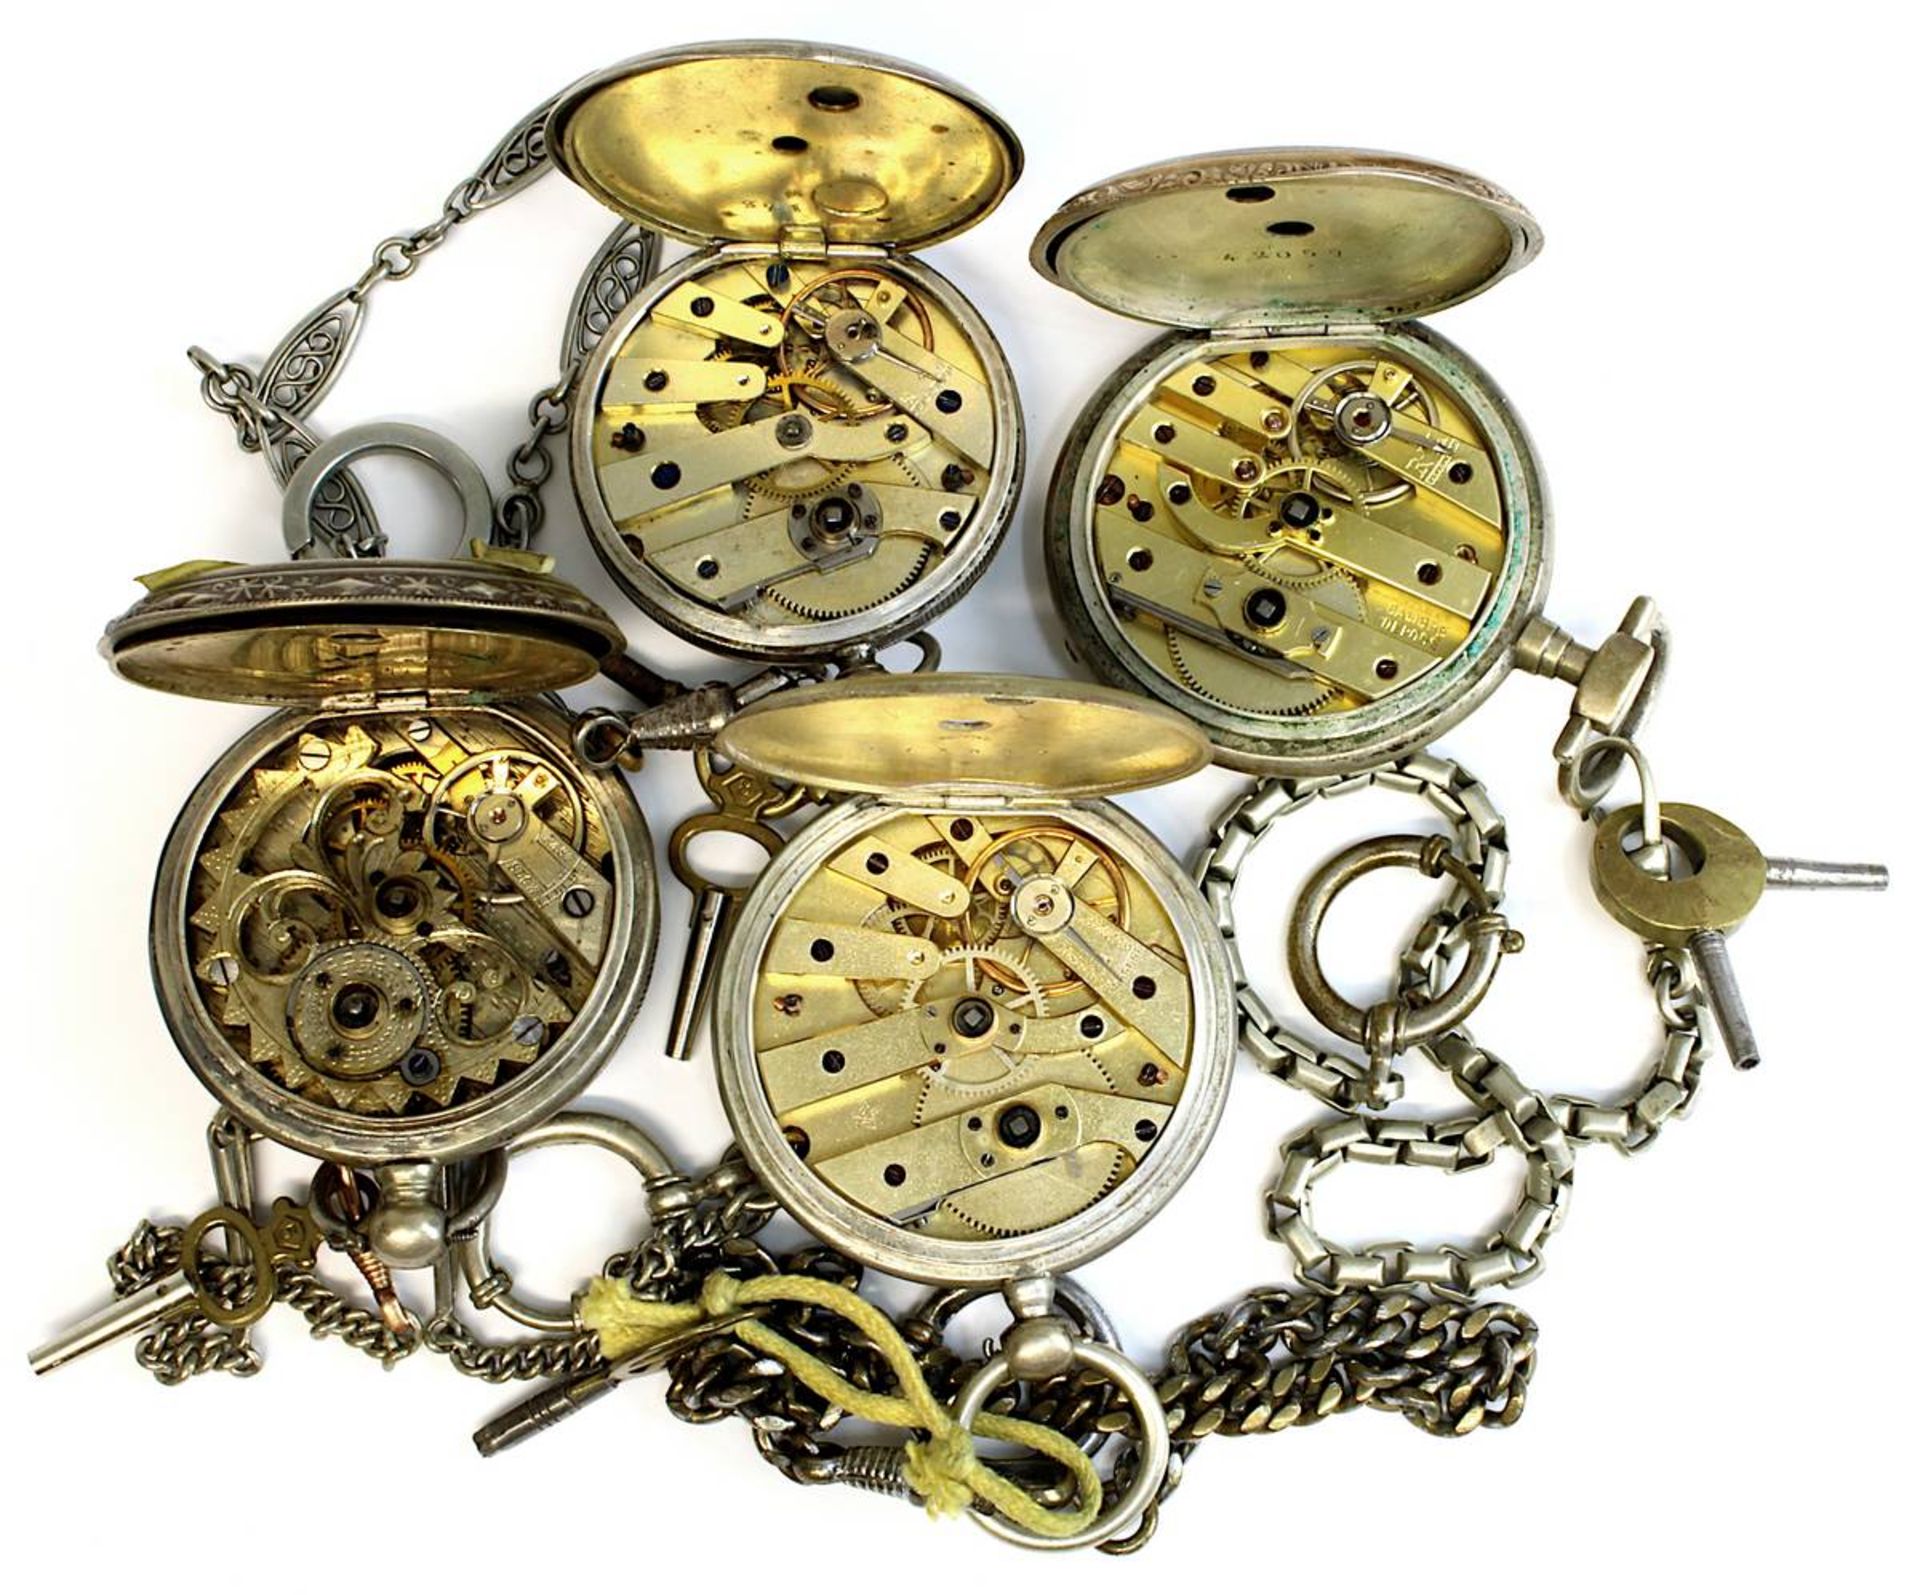 Vier Taschenuhren mit Schlüsselaufzug, Ende 19. Jh., Gehäuse teils Silber, teils versilbert, eine - Bild 2 aus 2